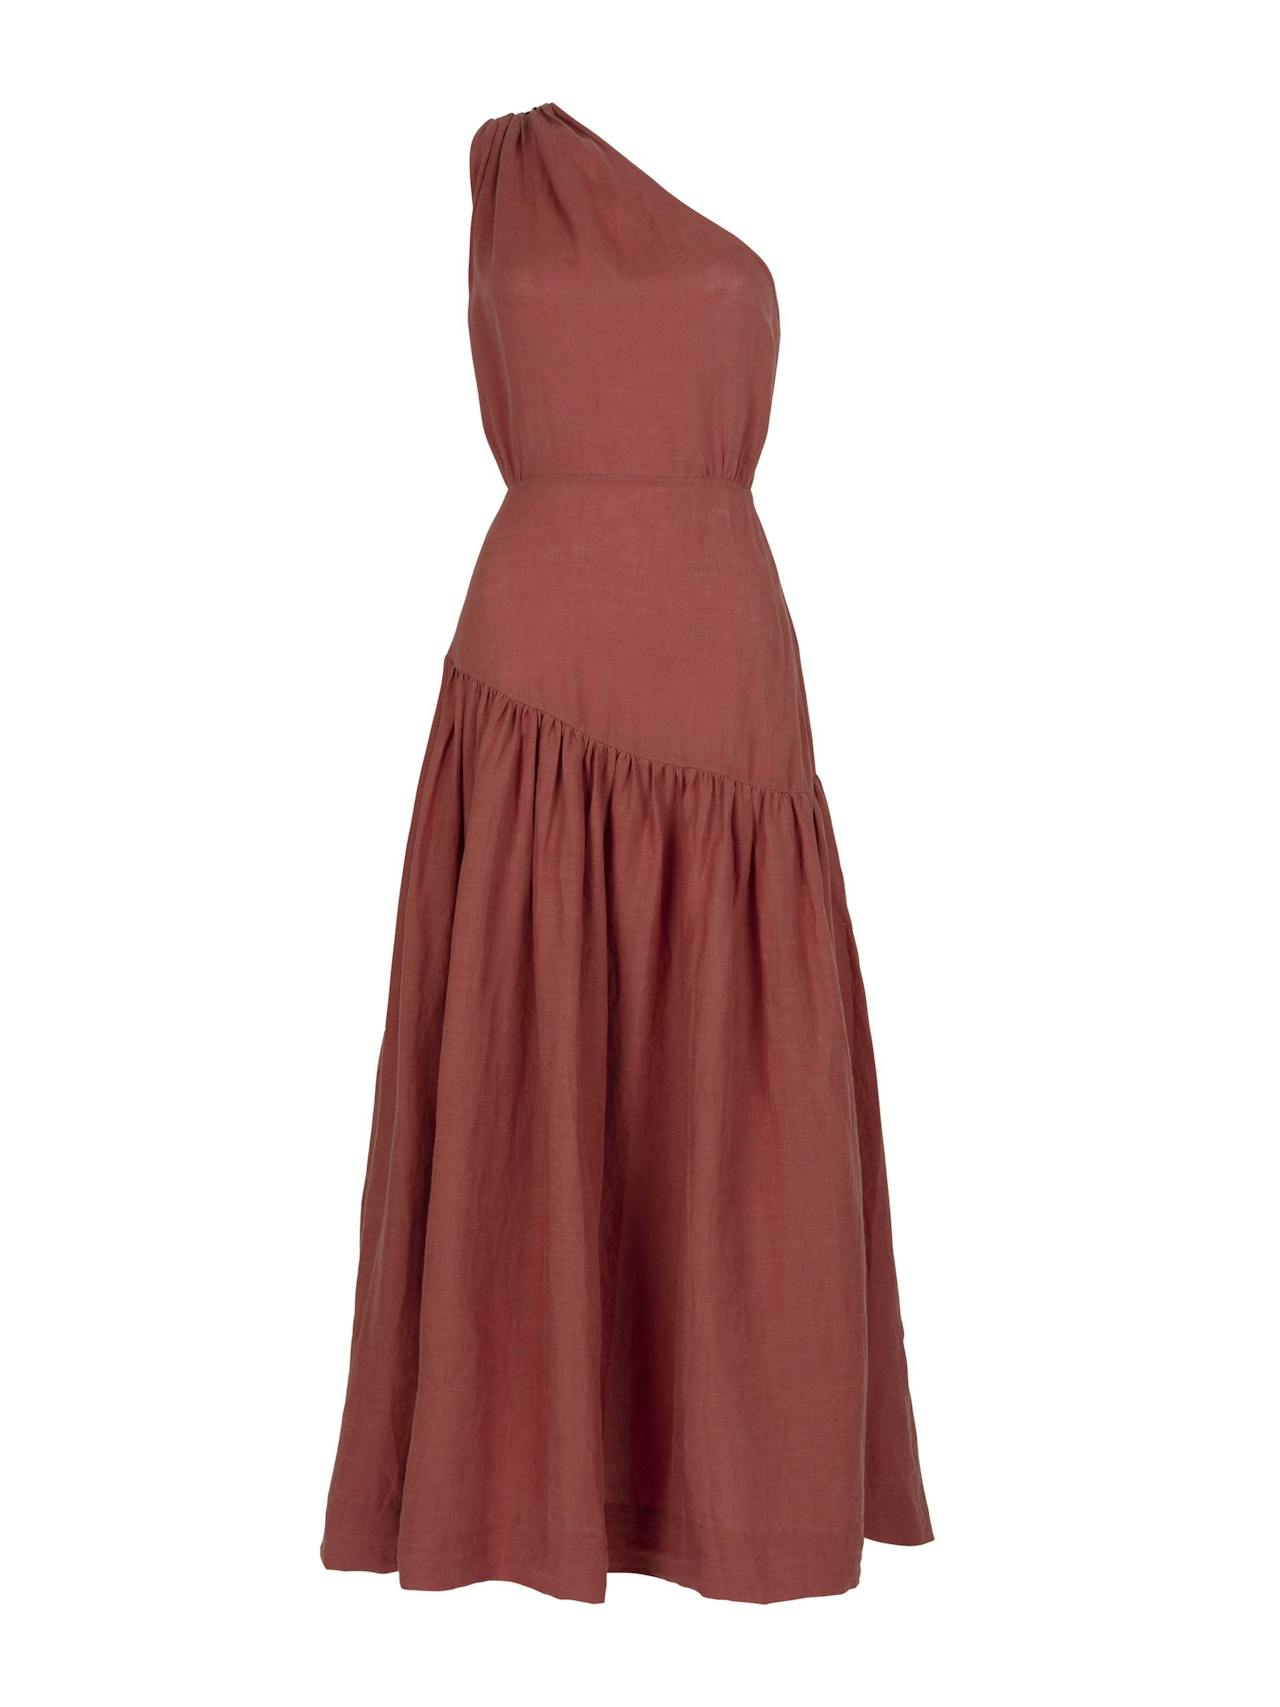 Mariam brick linen dress